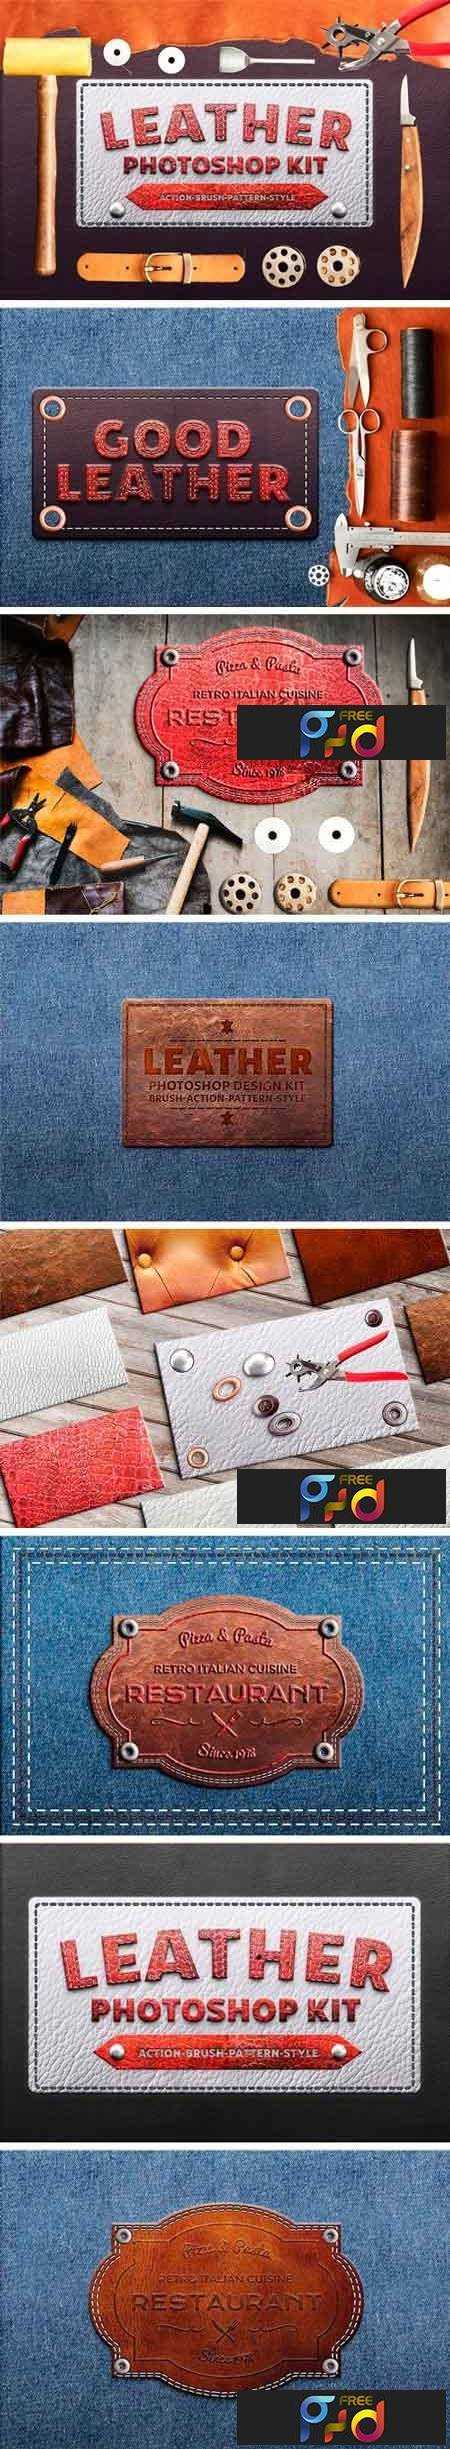 1802161 Photoshop Leather Kit 2200411 1